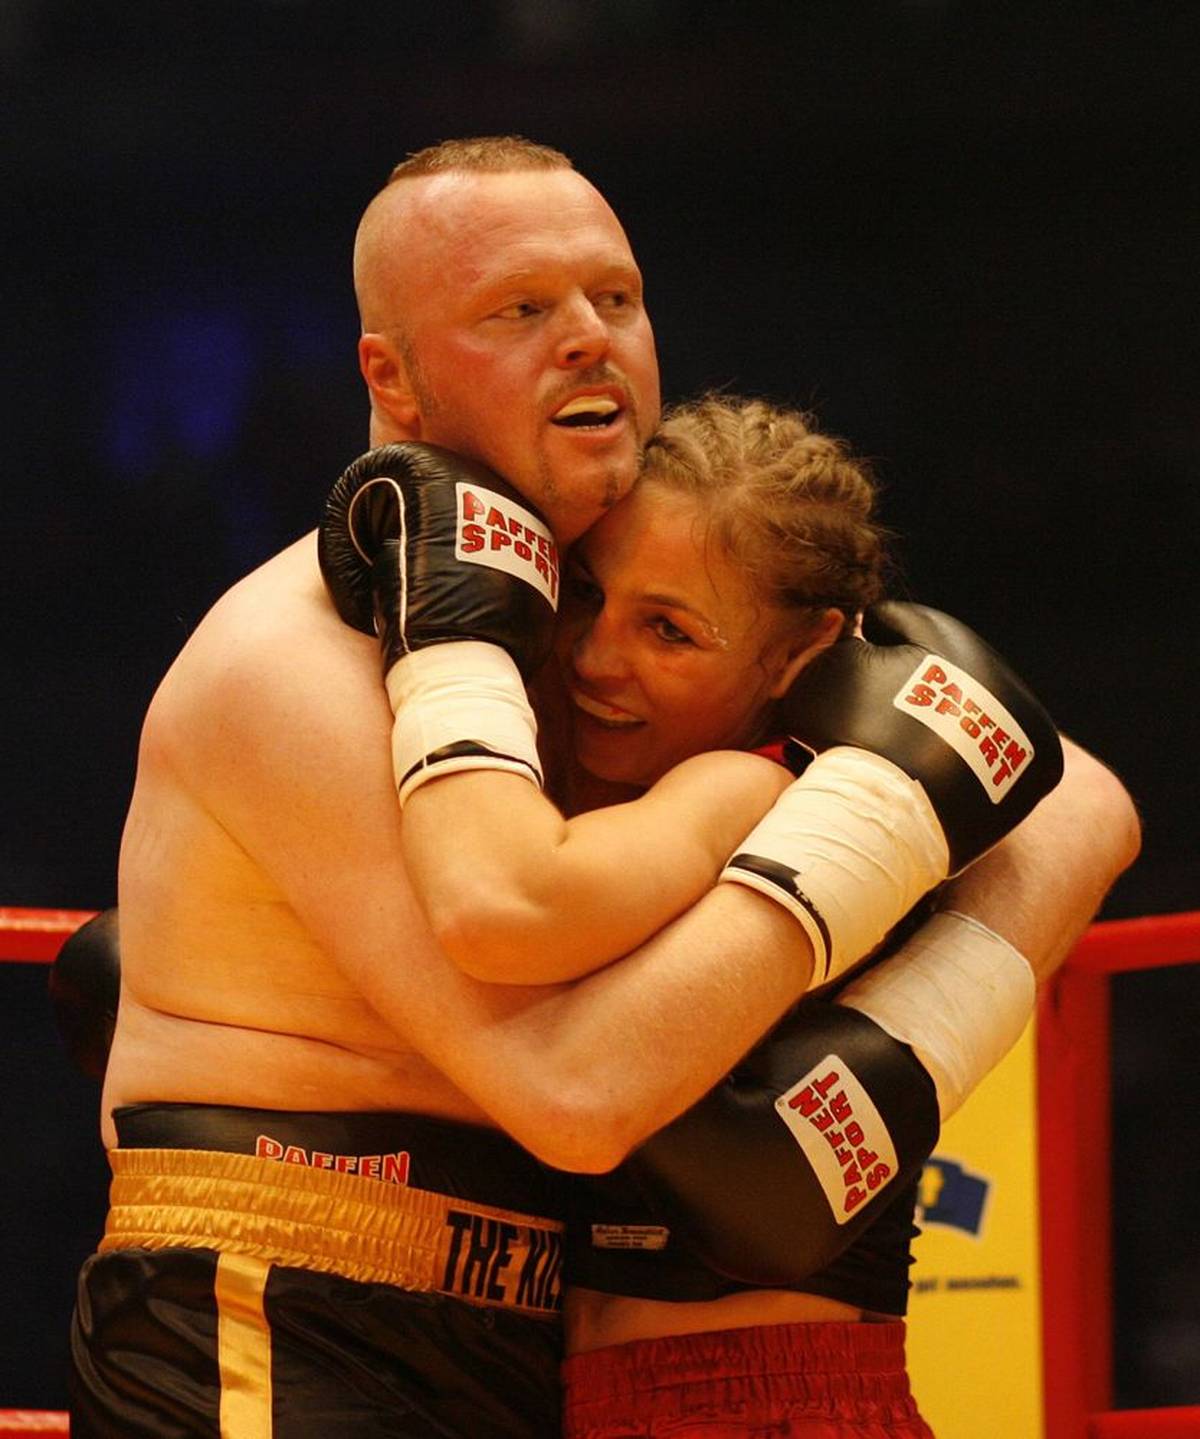 Stefan Raab és Regina Halmich a második bokszmeccsükön Kölnben 2007-ben